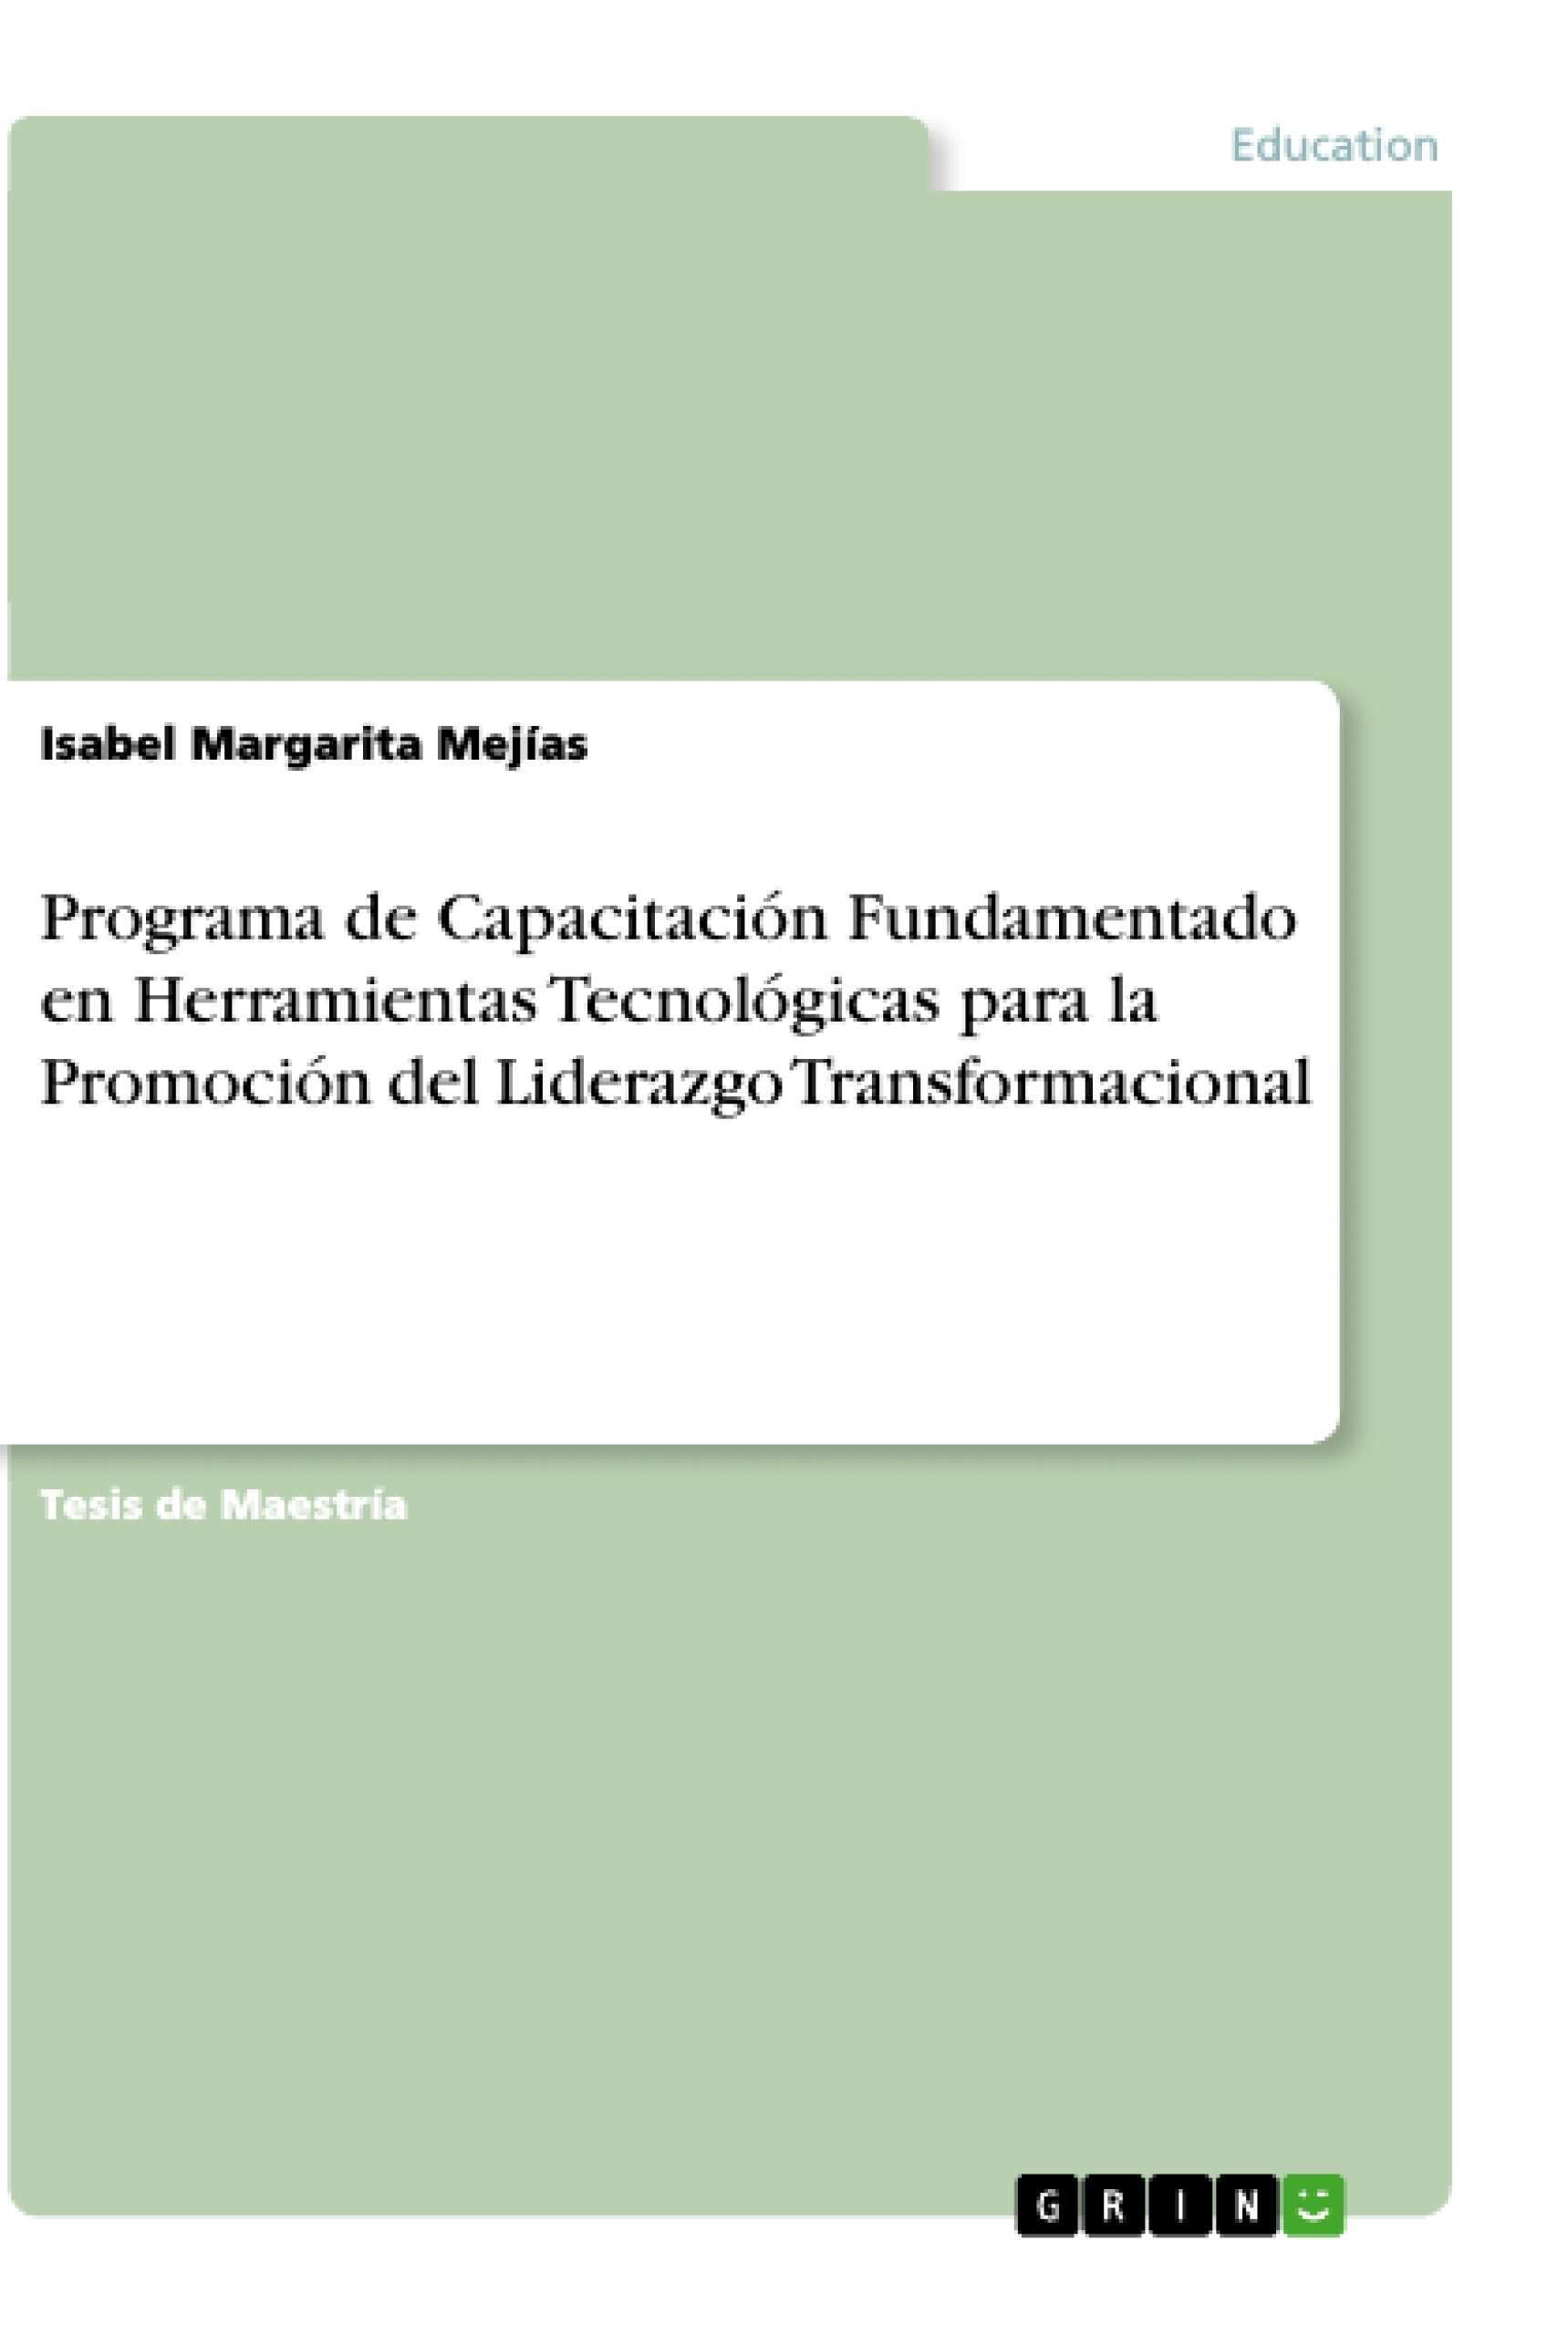 Titre: Programa de Capacitación Fundamentado en Herramientas Tecnológicas para la Promoción del Liderazgo Transformacional